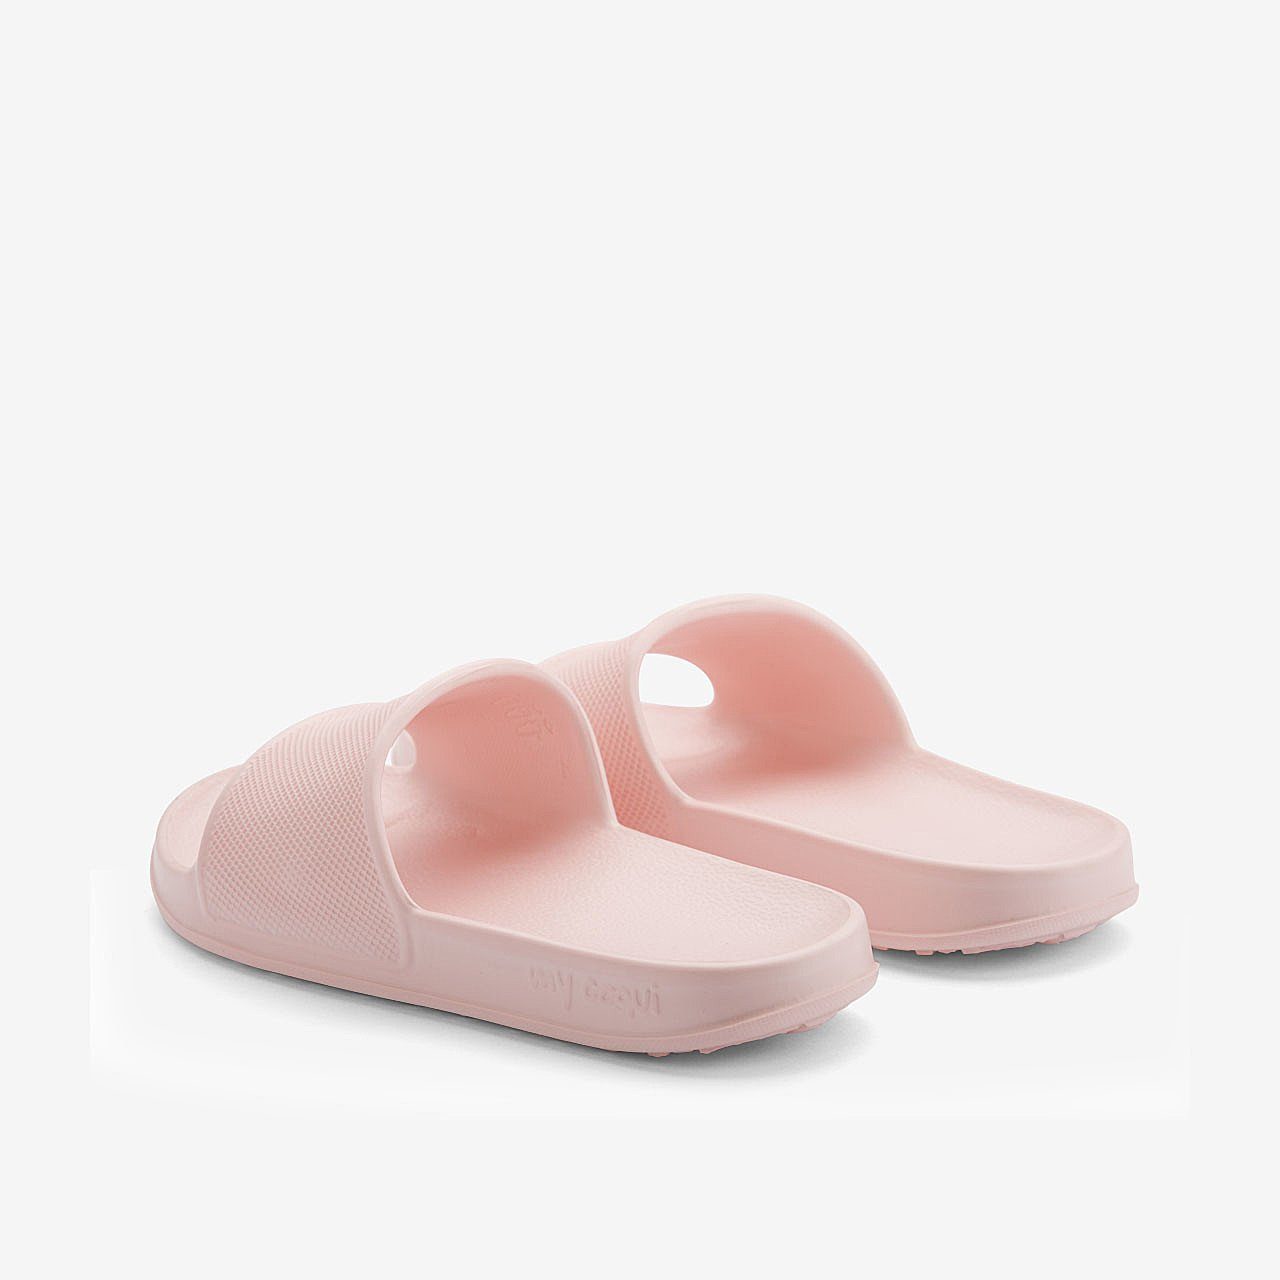 Schuhe Badeschuhe Coqui Slides für Kinder COQUI TORA Badeschuh